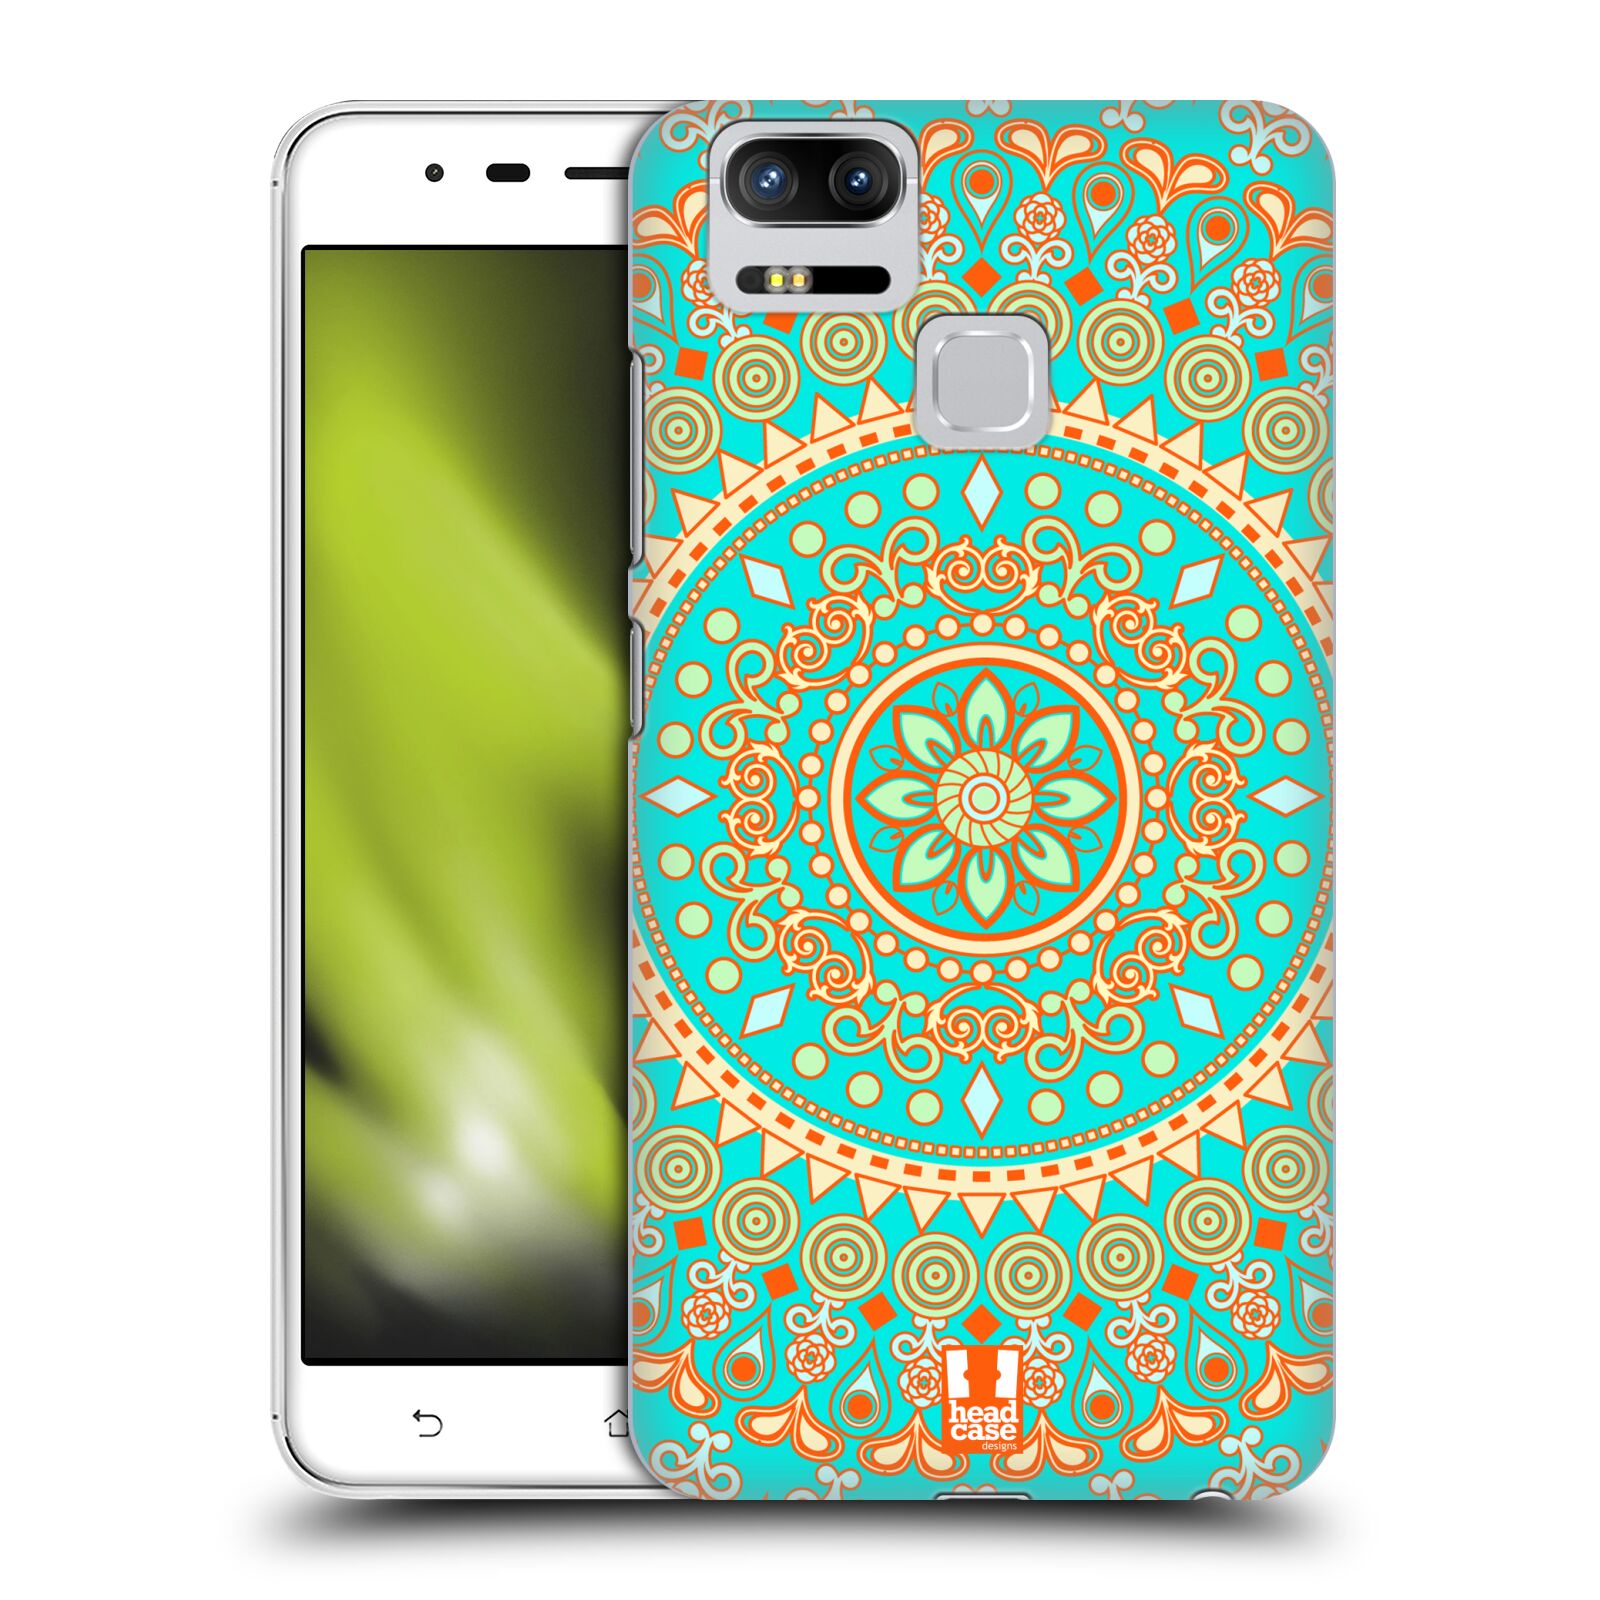 HEAD CASE plastový obal na mobil Asus Zenfone 3 Zoom ZE553KL vzor Indie Mandala slunce barevný motiv TYRKYSOVÁ, ZELENÁ